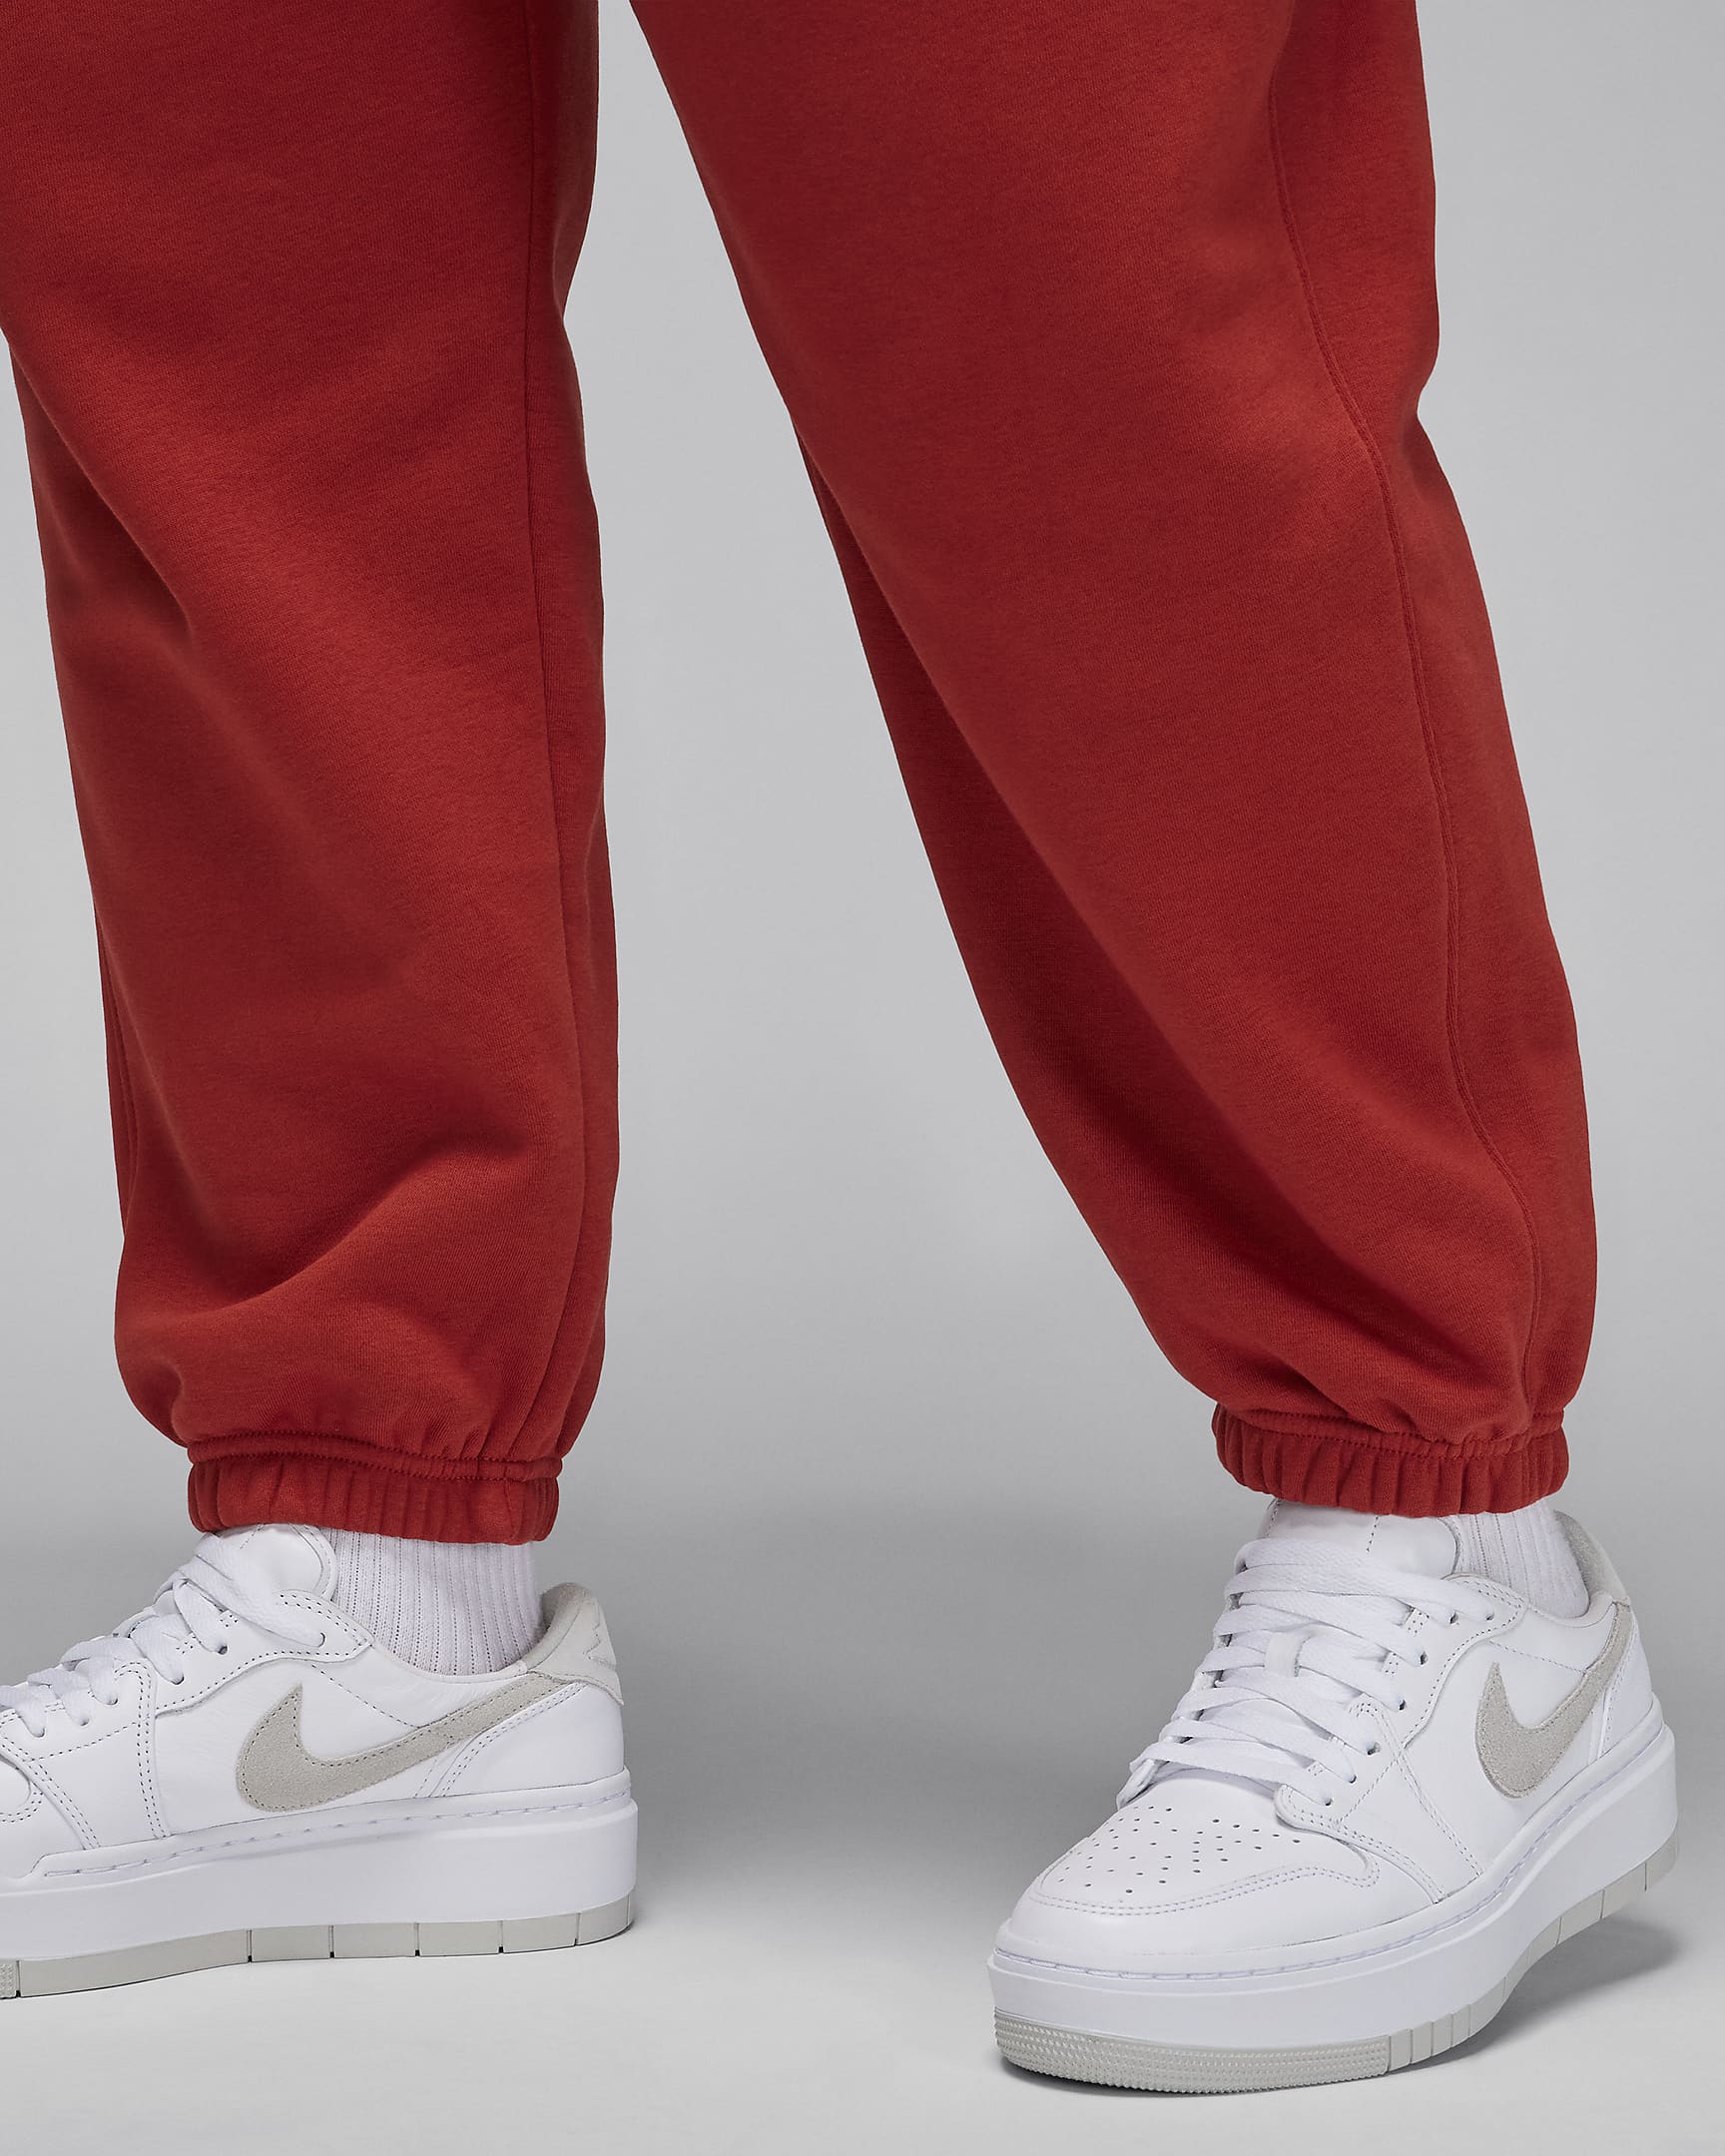 Jordan Brooklyn Fleece Women's Trousers (Plus Size). Nike UK